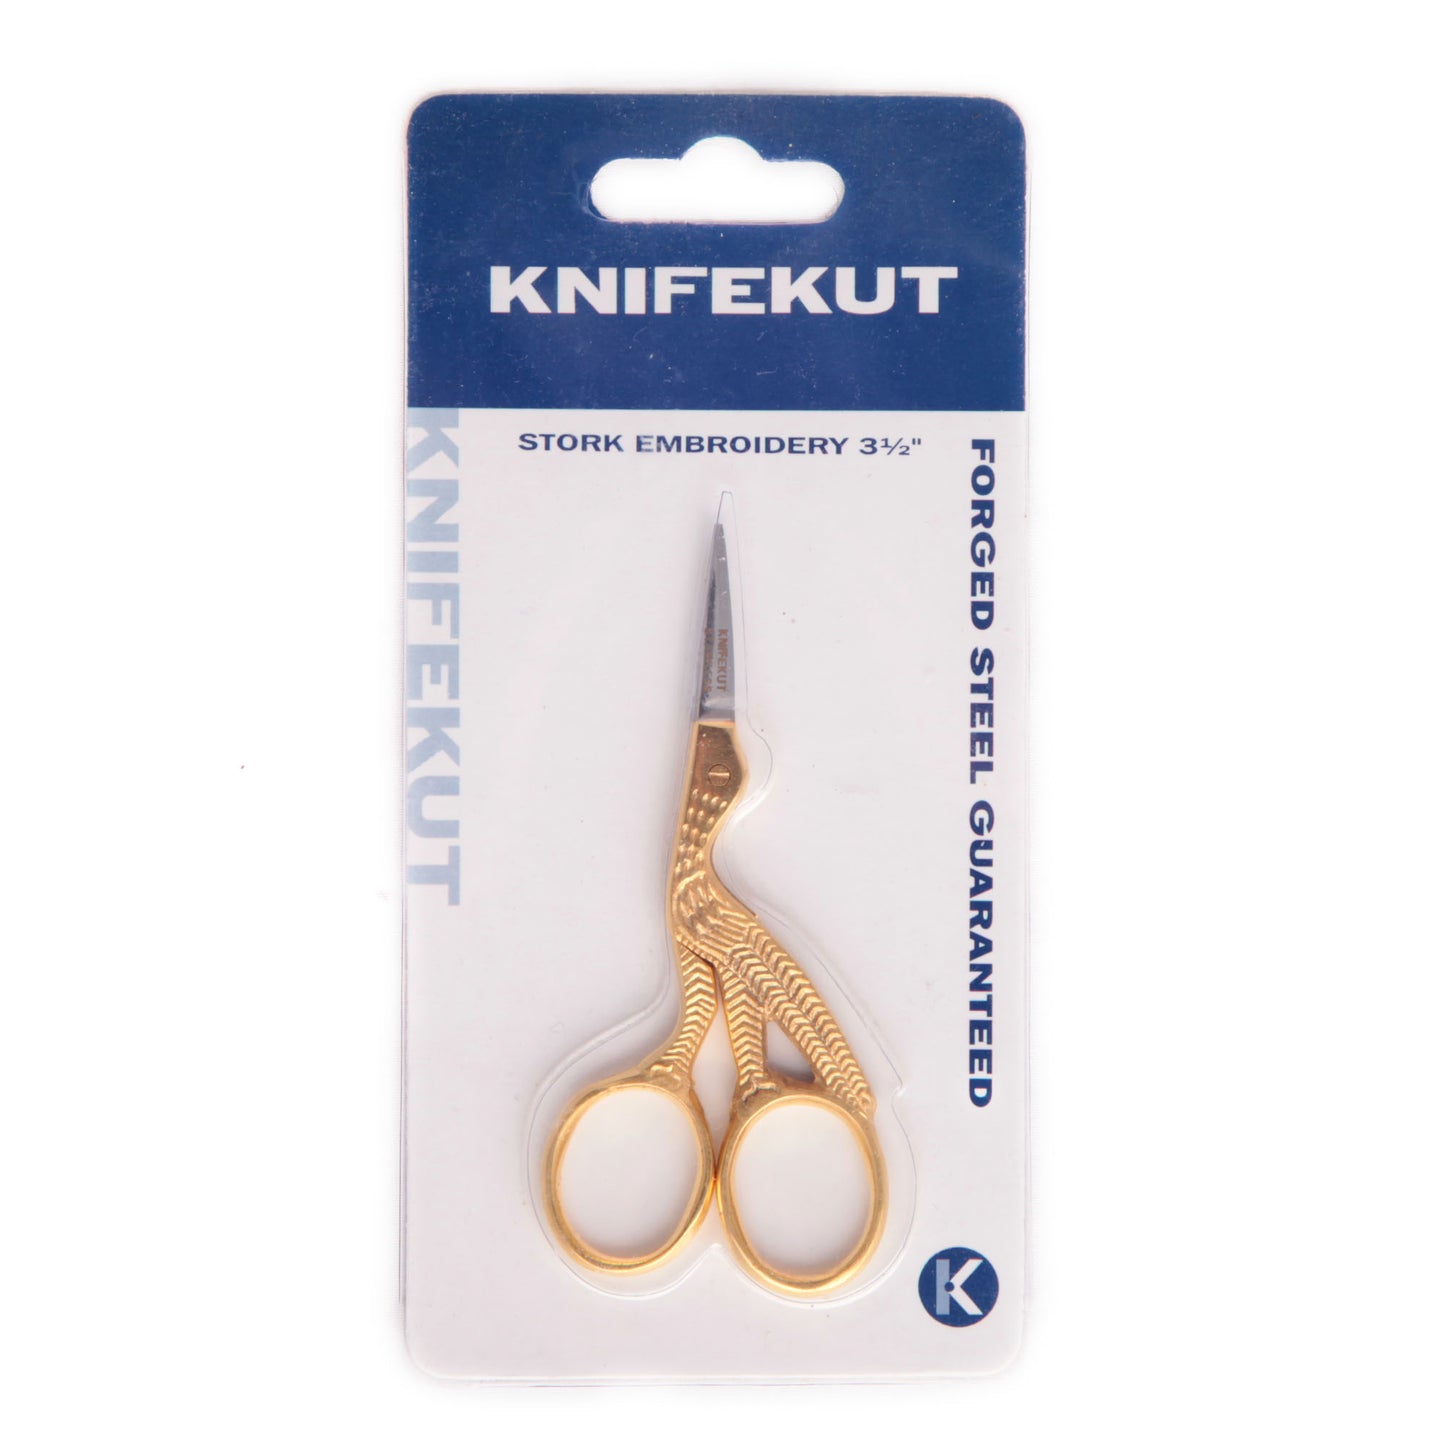 Scissors KnifeKut